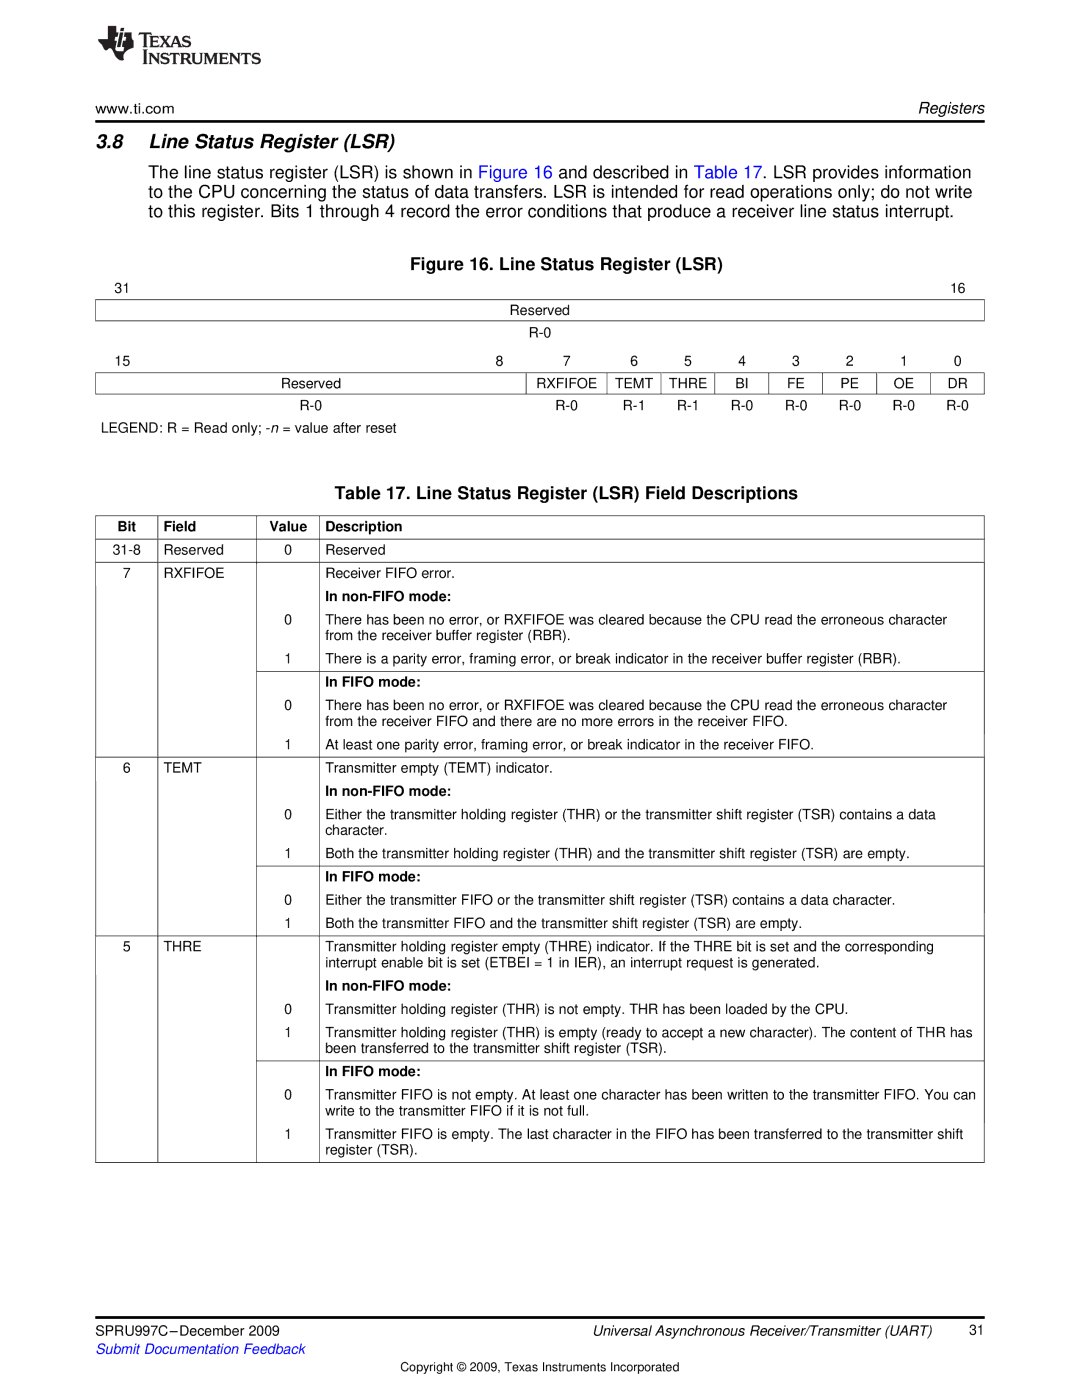 Texas Instruments TMS320DM643X DMP manual Line Status Register LSR Field Descriptions, Non-FIFO mode, Fifo mode 